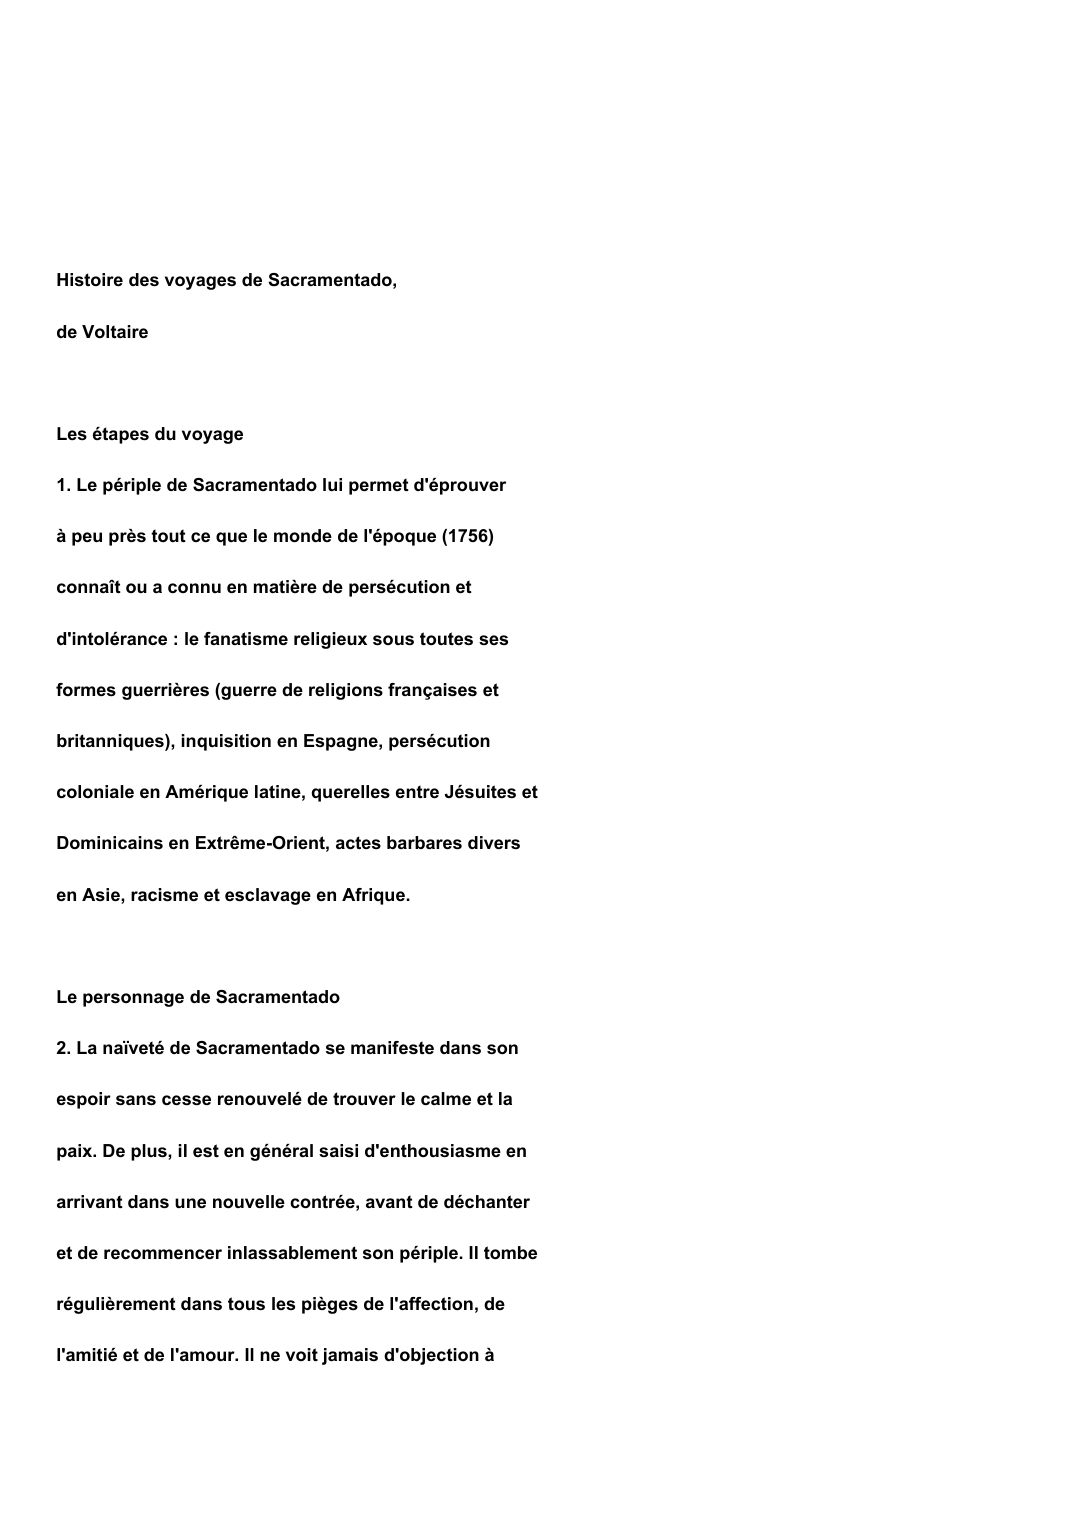 Prévisualisation du document Correction du commentaire composé de histoire des voyages de Scarmentado écrite par lui même (1756) de voltaire